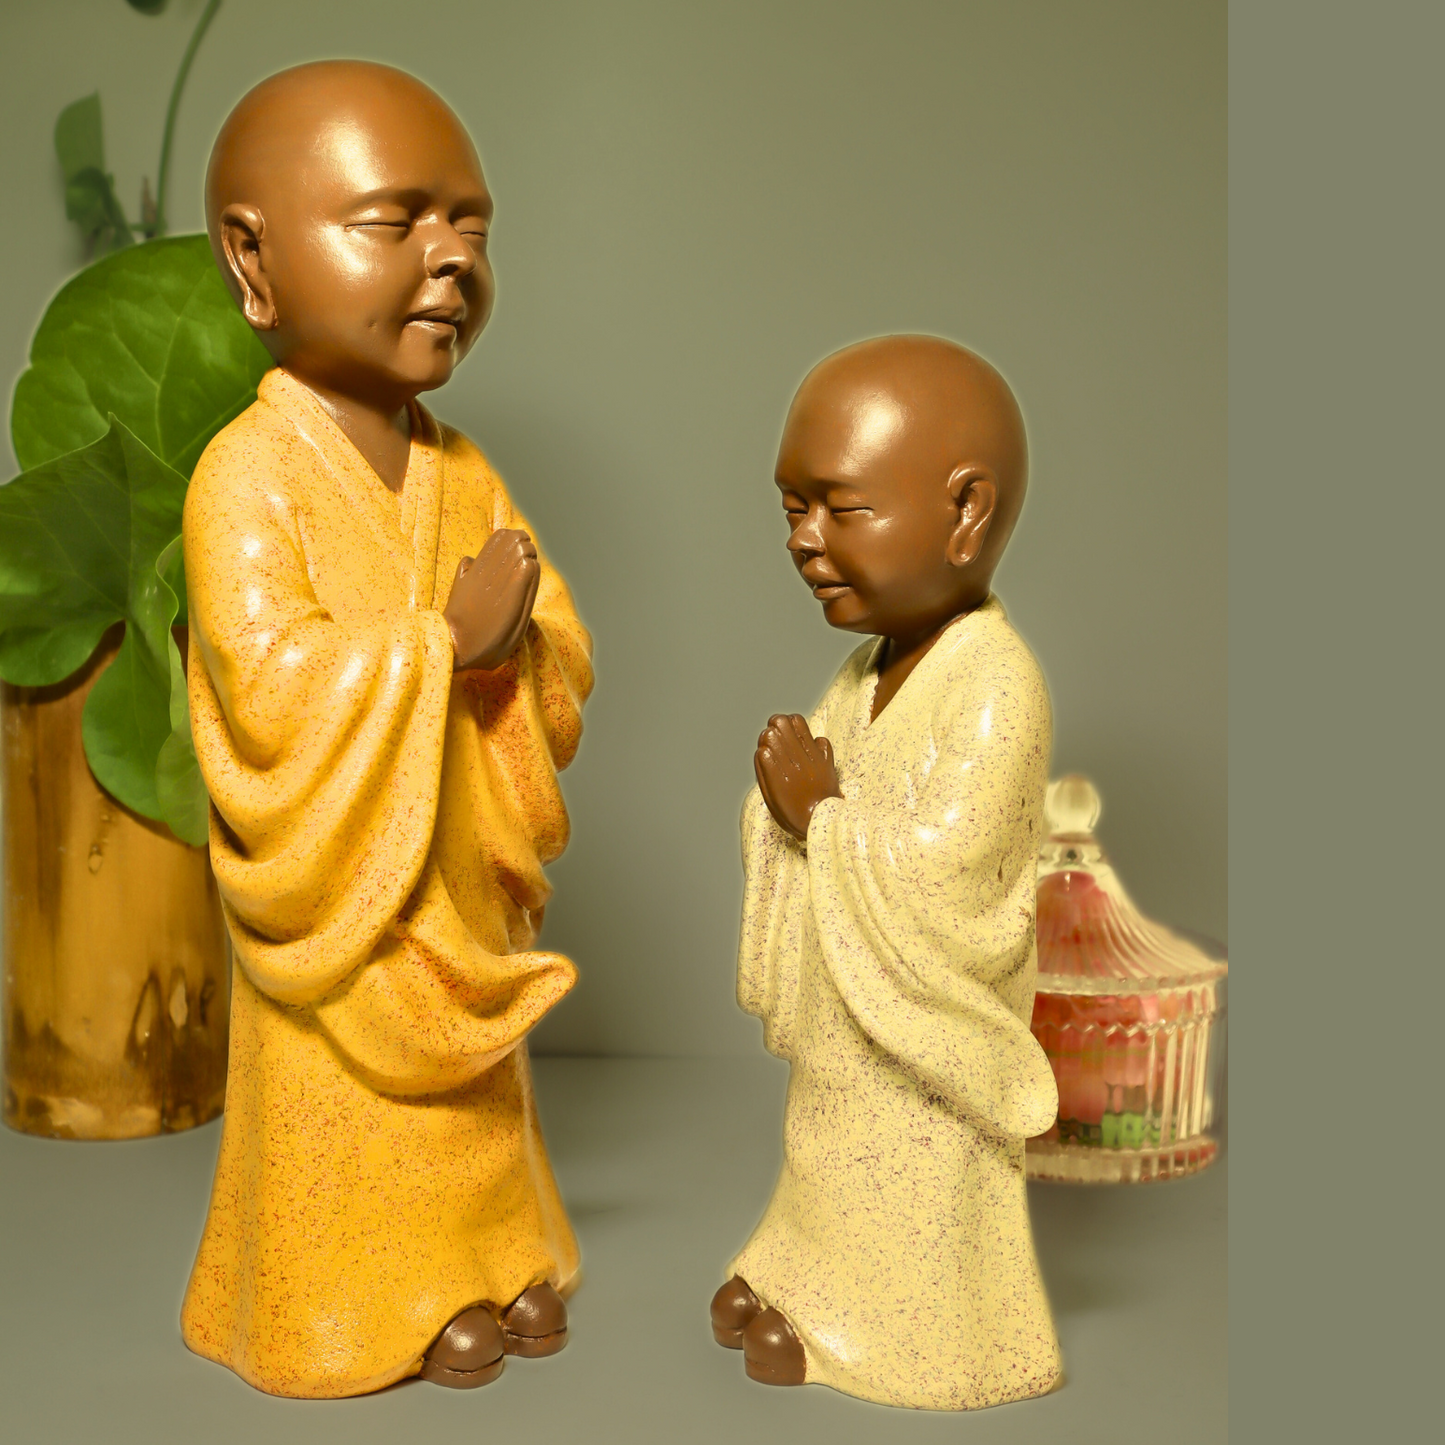 Surreal Monk Of the World -Namaste Monk